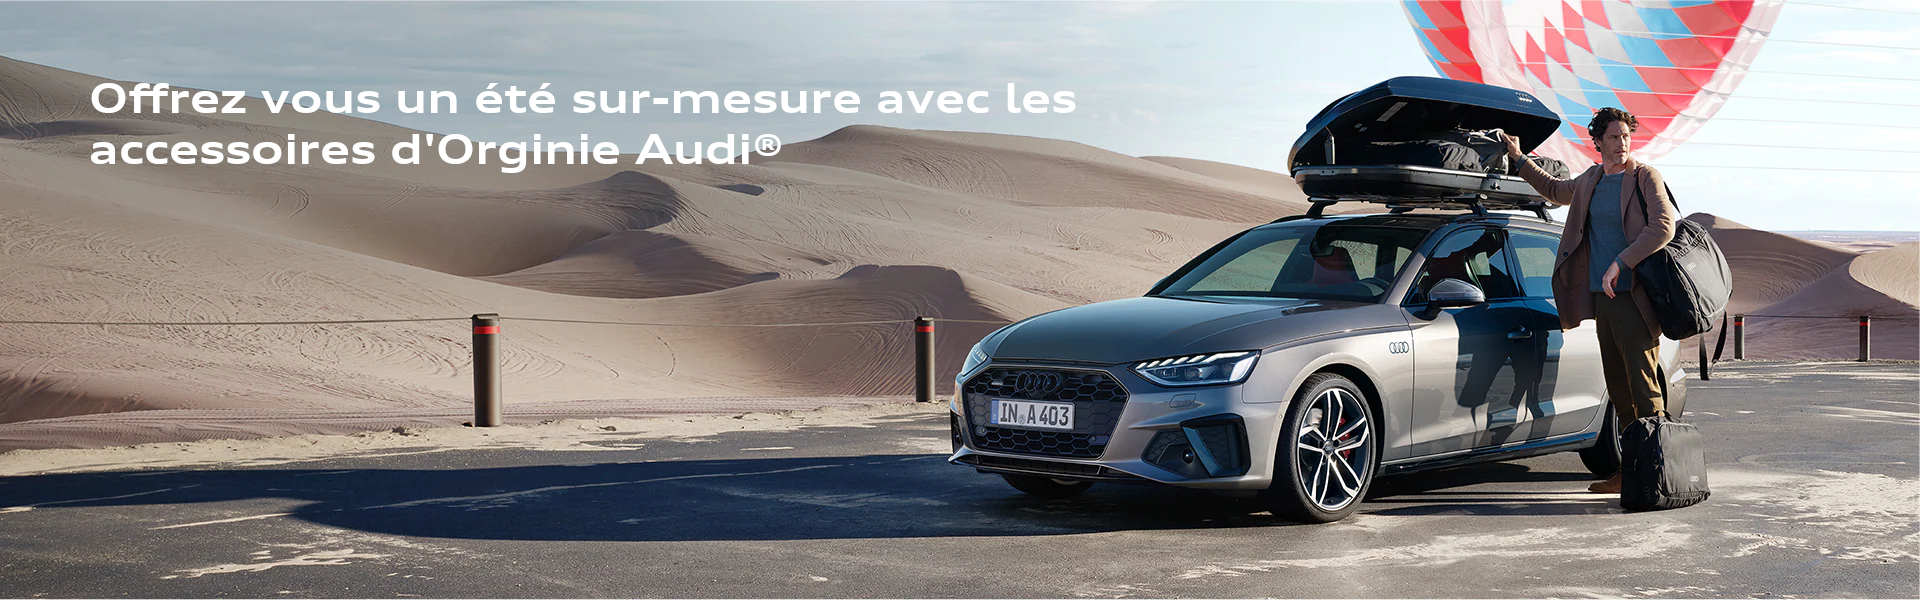 Offre accessoires été 2021 - Audi Laval - Véhicules neufs et